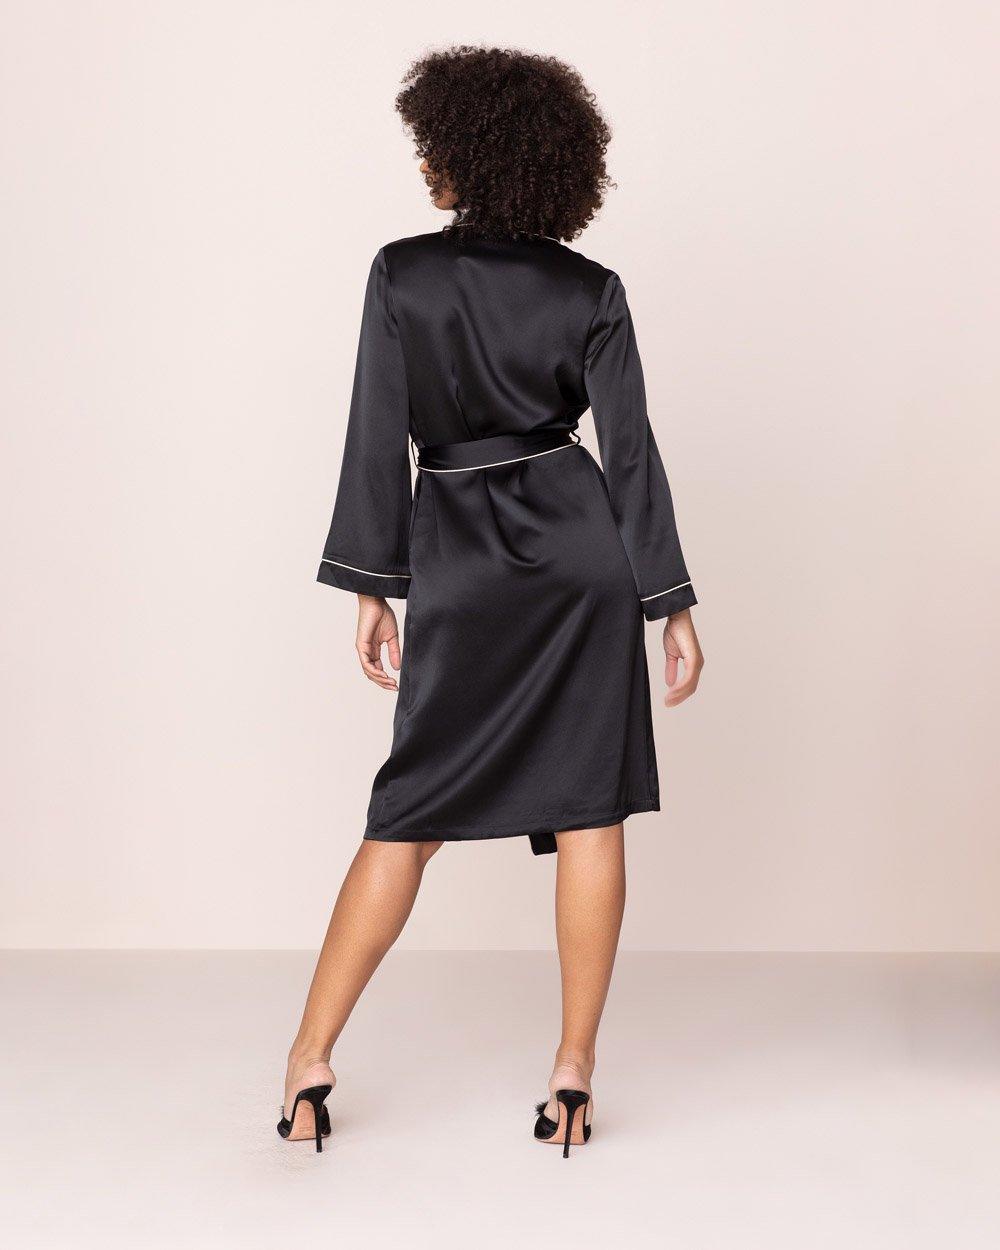 Agent Provocateur-Robes-Classic Dressing Gown-brava-boutique